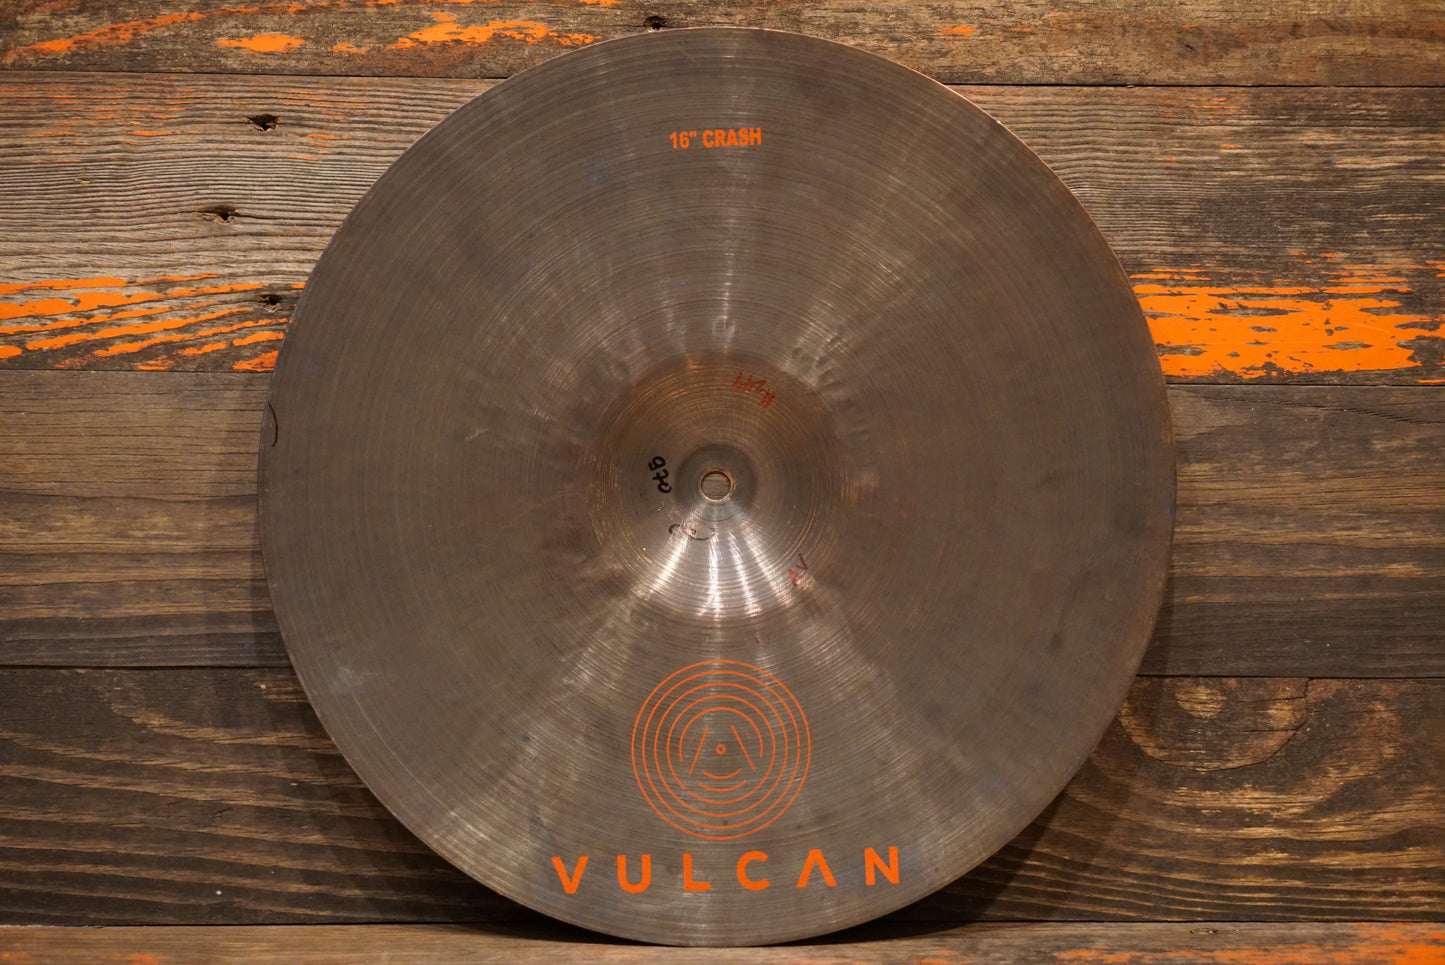 Vulcan 16" Legacy Series Crash Cymbal - 970g